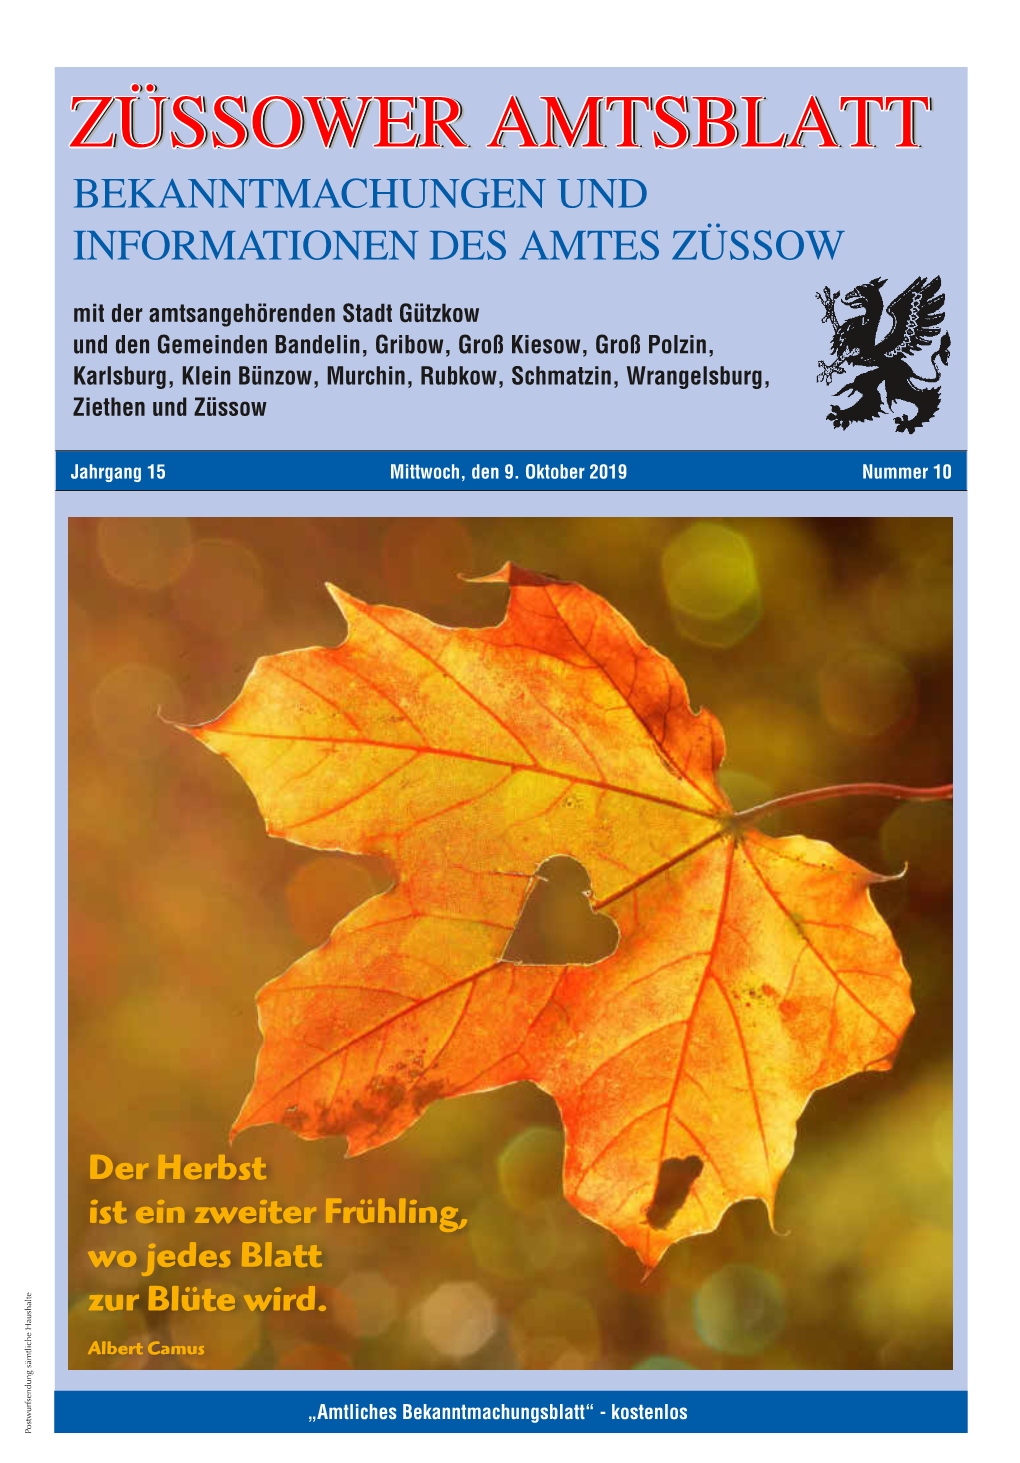 Züssower Amtsblatt Nr. 10 / 2019